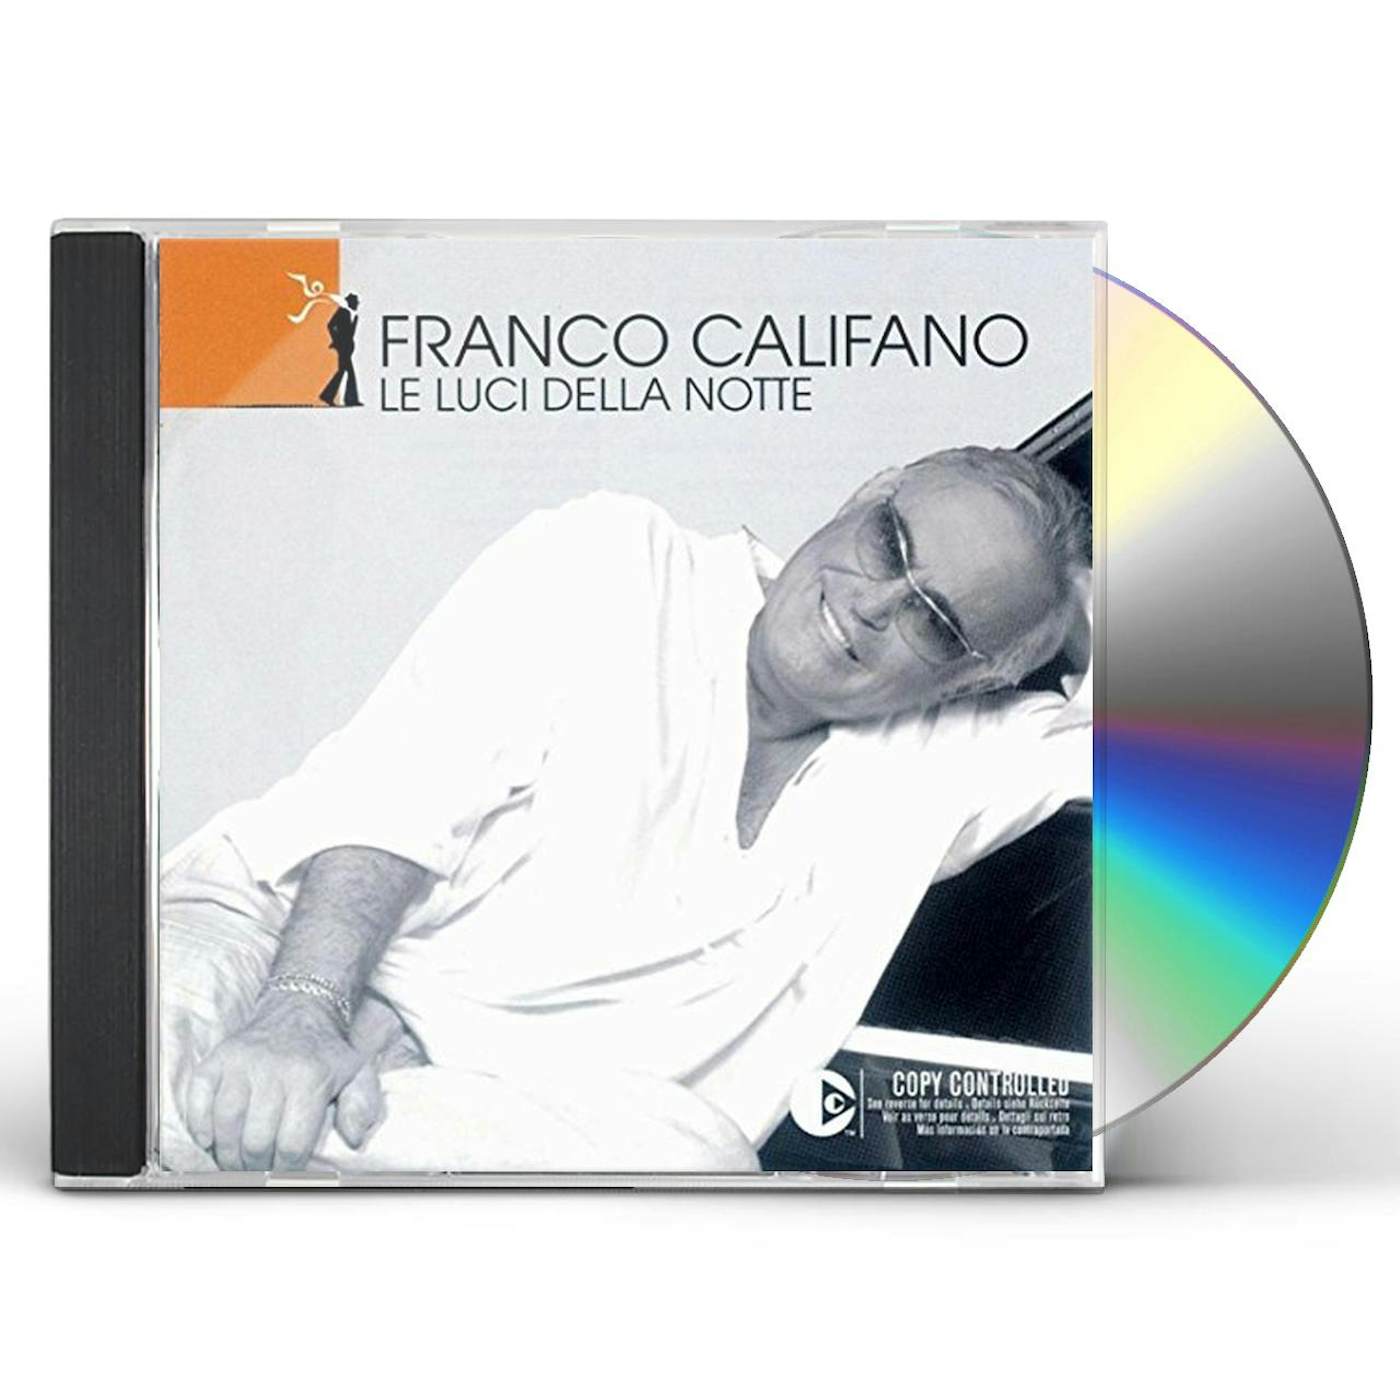 Franco Califano LE LUCI DELLA NOTTE CD